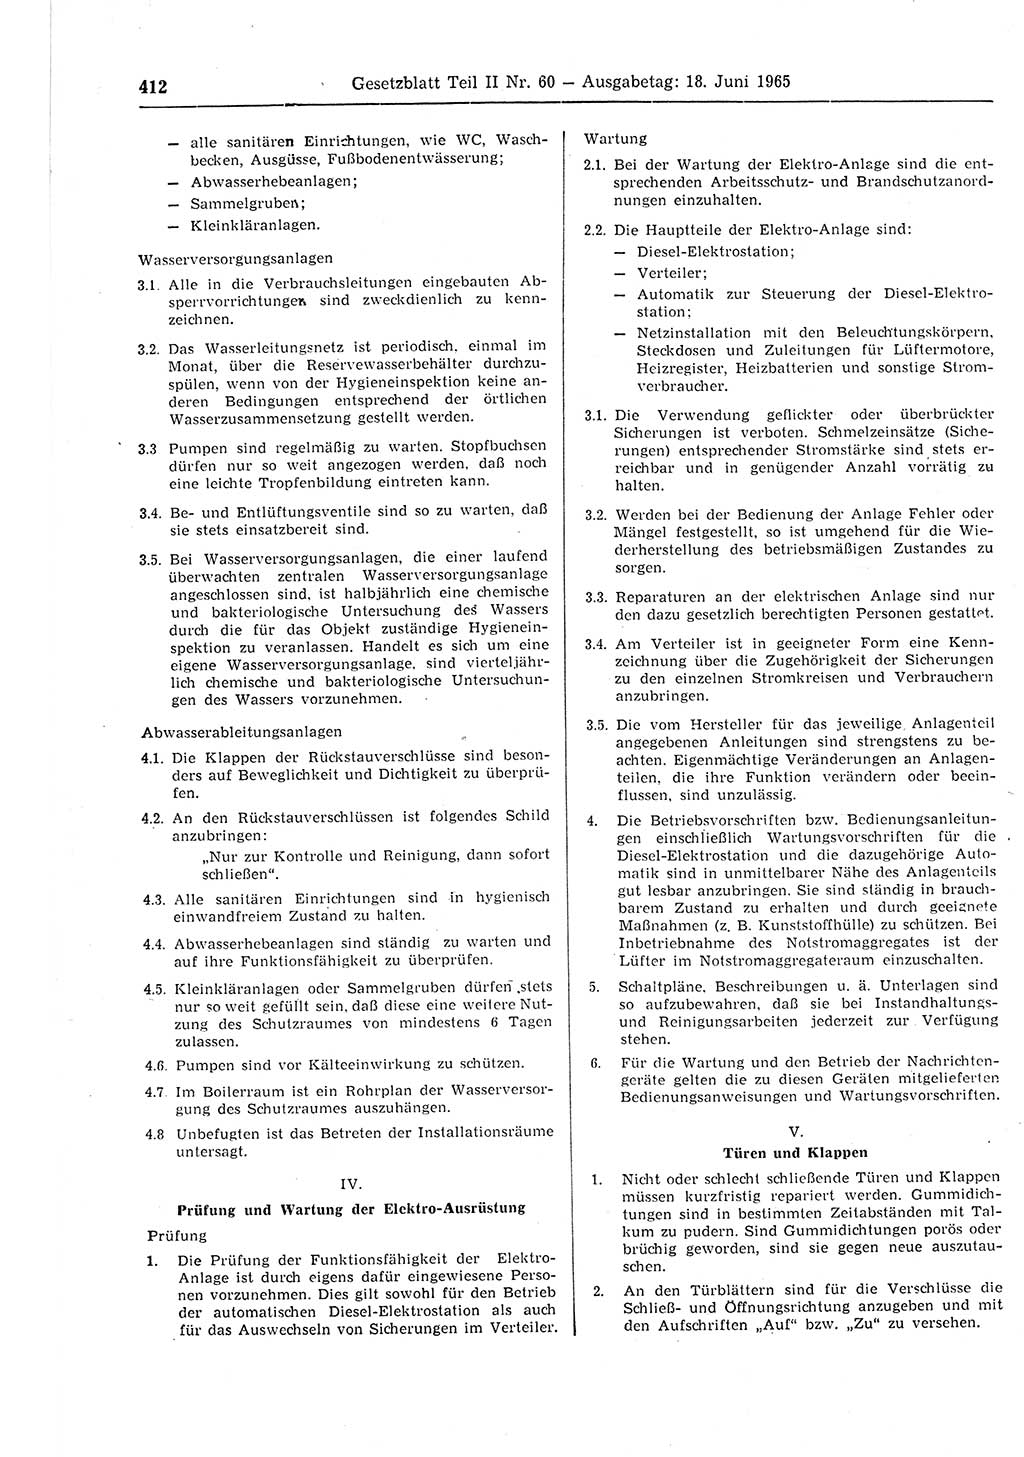 Gesetzblatt (GBl.) der Deutschen Demokratischen Republik (DDR) Teil ⅠⅠ 1965, Seite 412 (GBl. DDR ⅠⅠ 1965, S. 412)